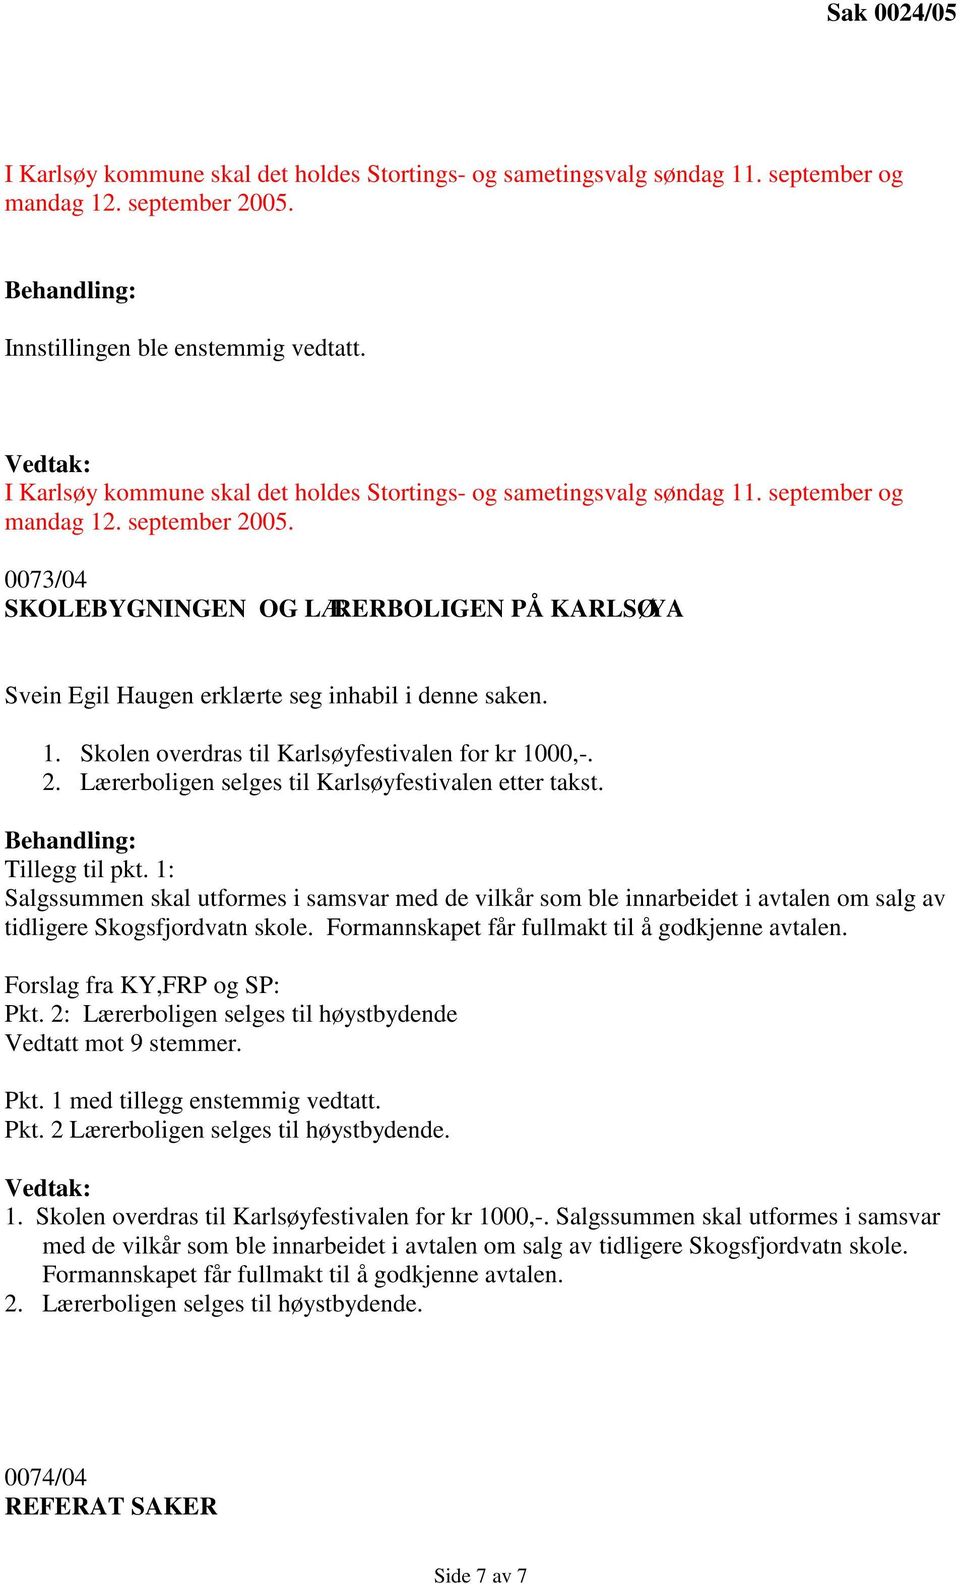 2. Lærerboligen selges til Karlsøyfestivalen etter takst. Tillegg til pkt. 1: Salgssummen skal utformes i samsvar med de vilkår som ble innarbeidet i avtalen om salg av tidligere Skogsfjordvatn skole.